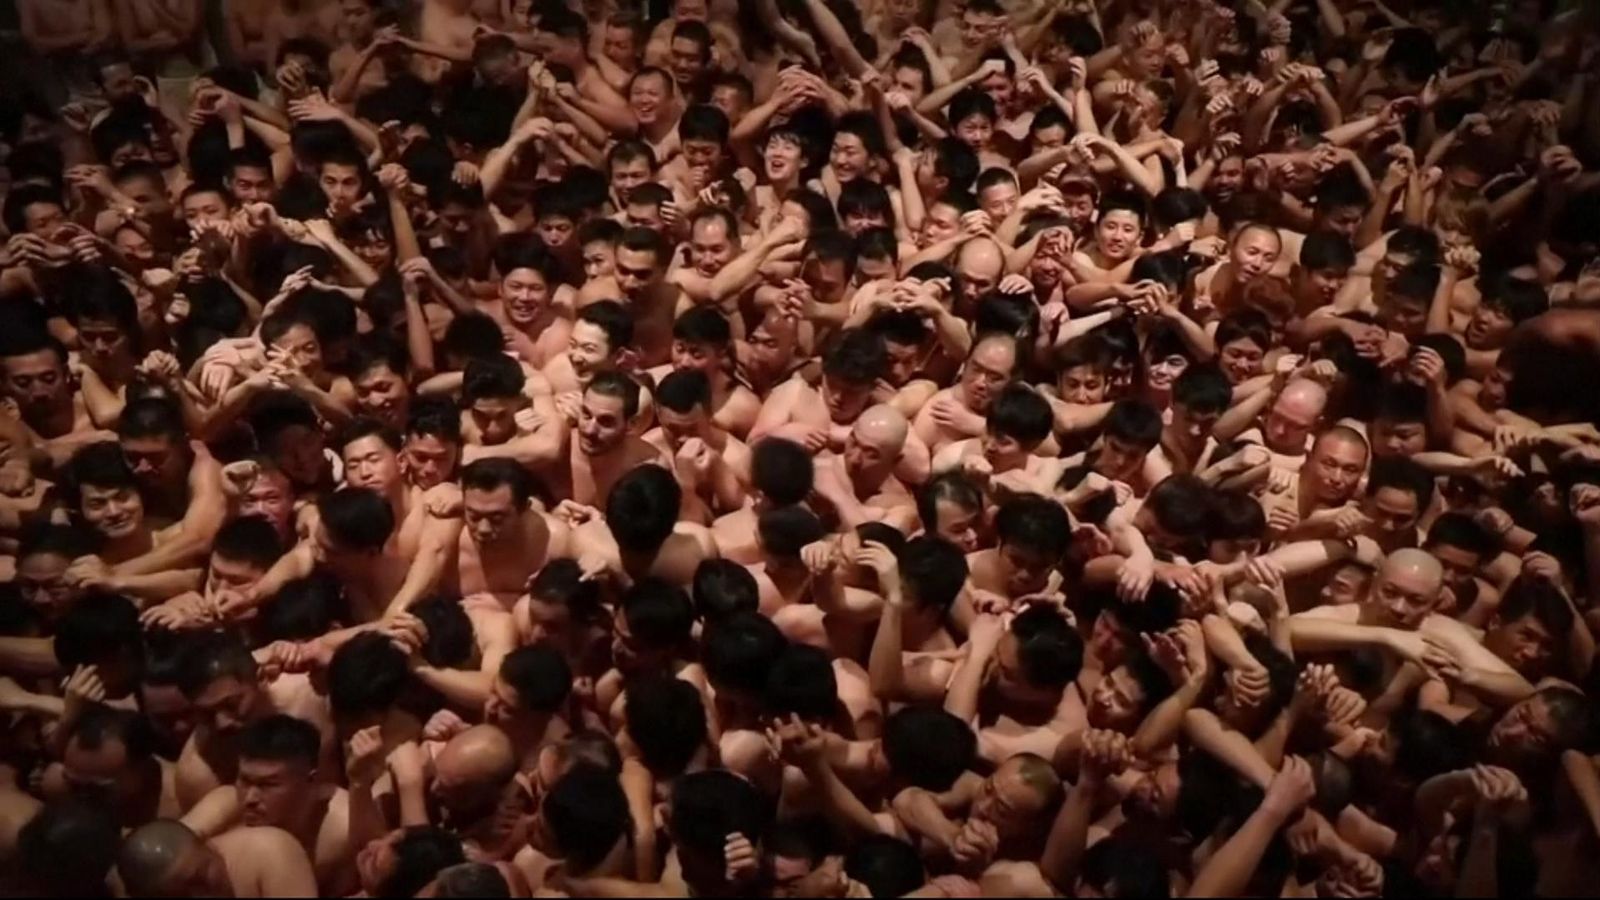 Japan All Male Naked Festival